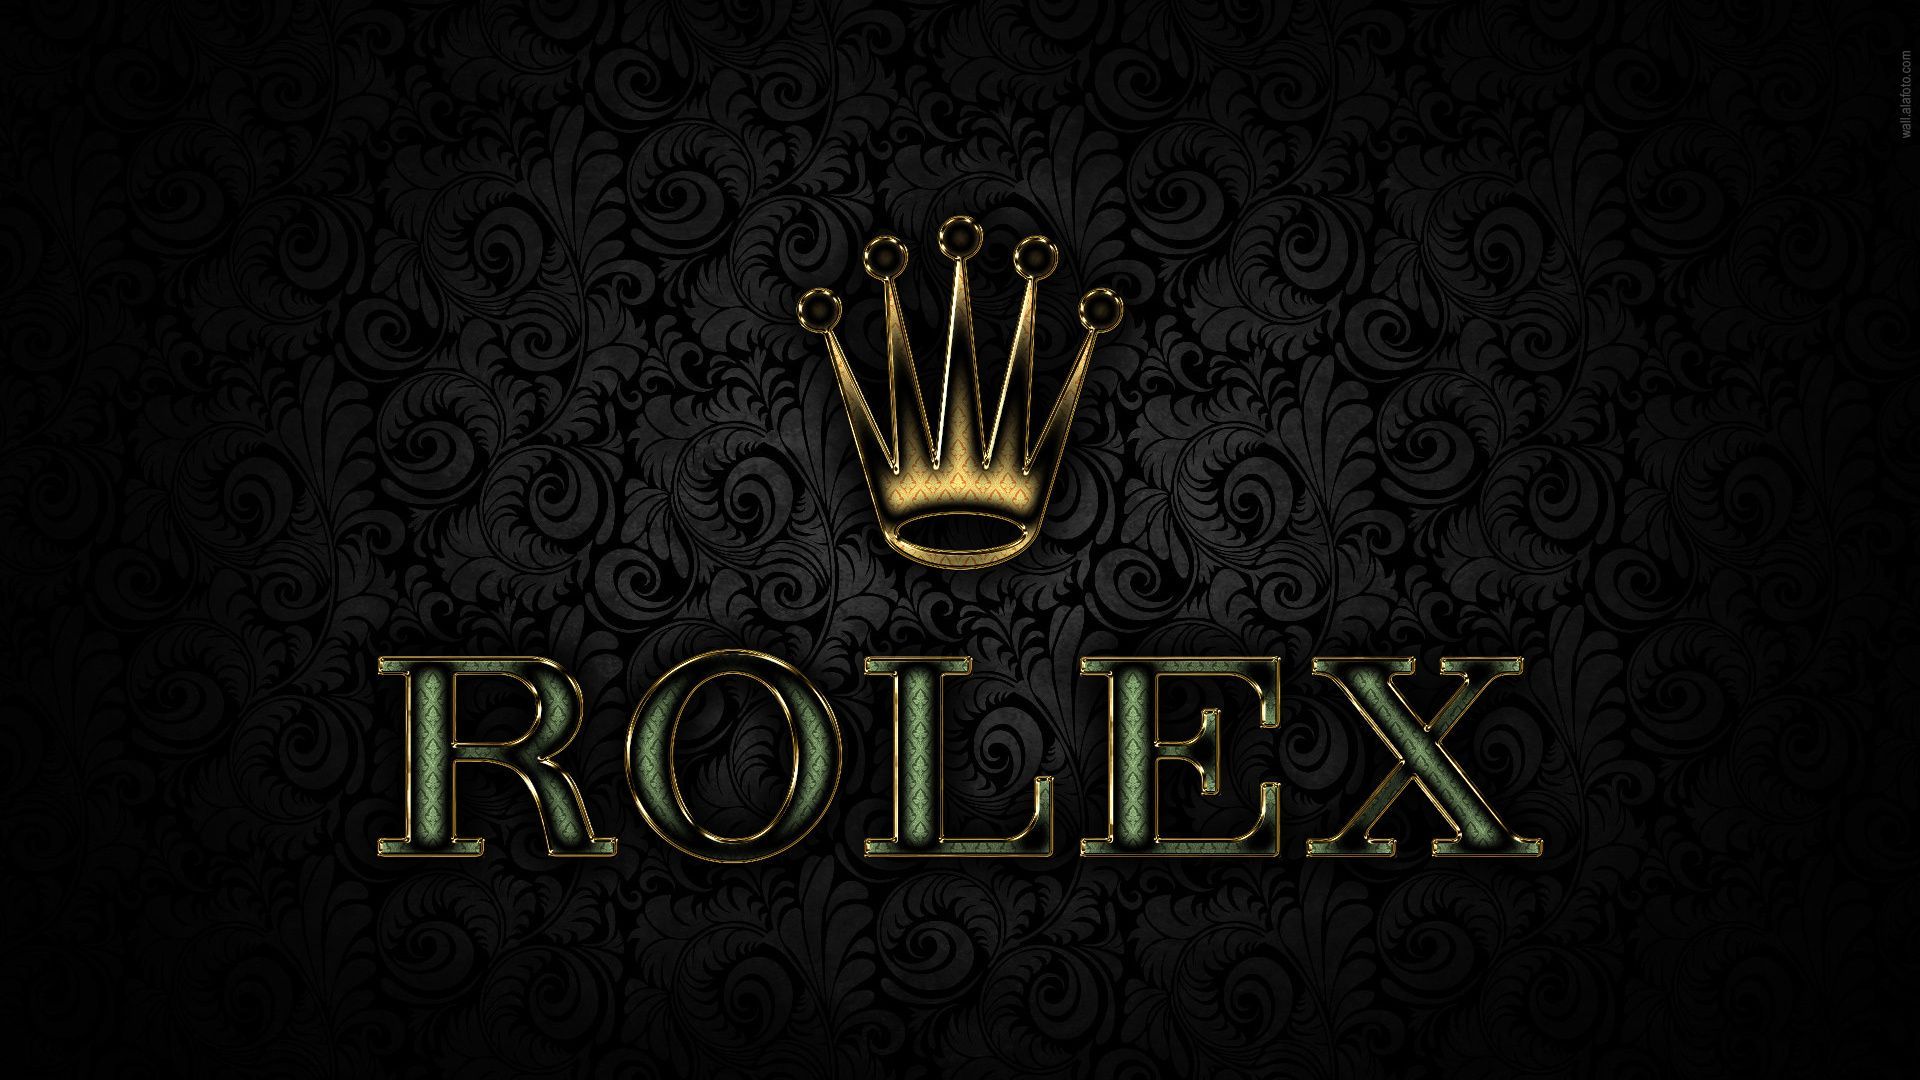 Rolex Brand Logo #Wallpaper Wallpaper. Rolex logo, Rolex, Watch brands